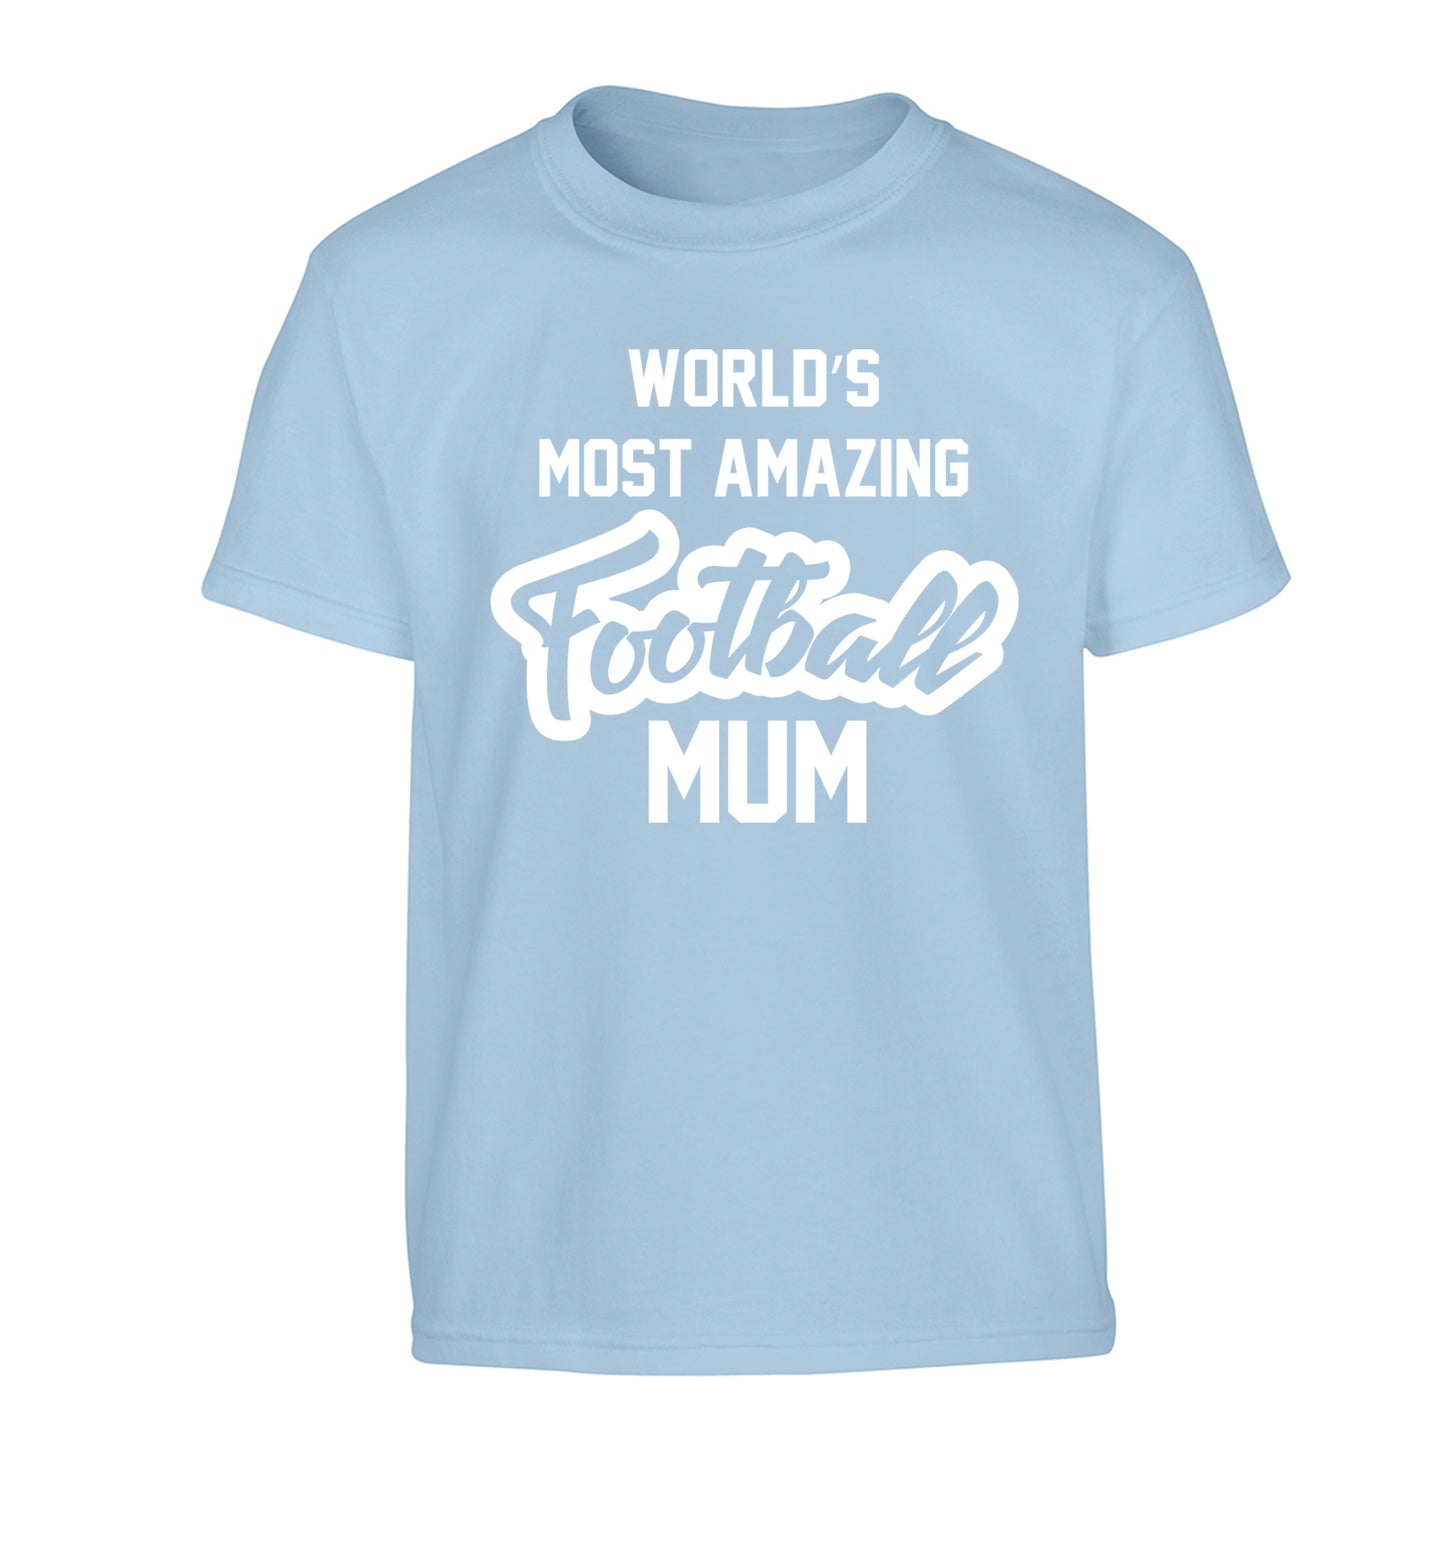 Worlds most amazing football mum Children's light blue Tshirt 12-14 Years